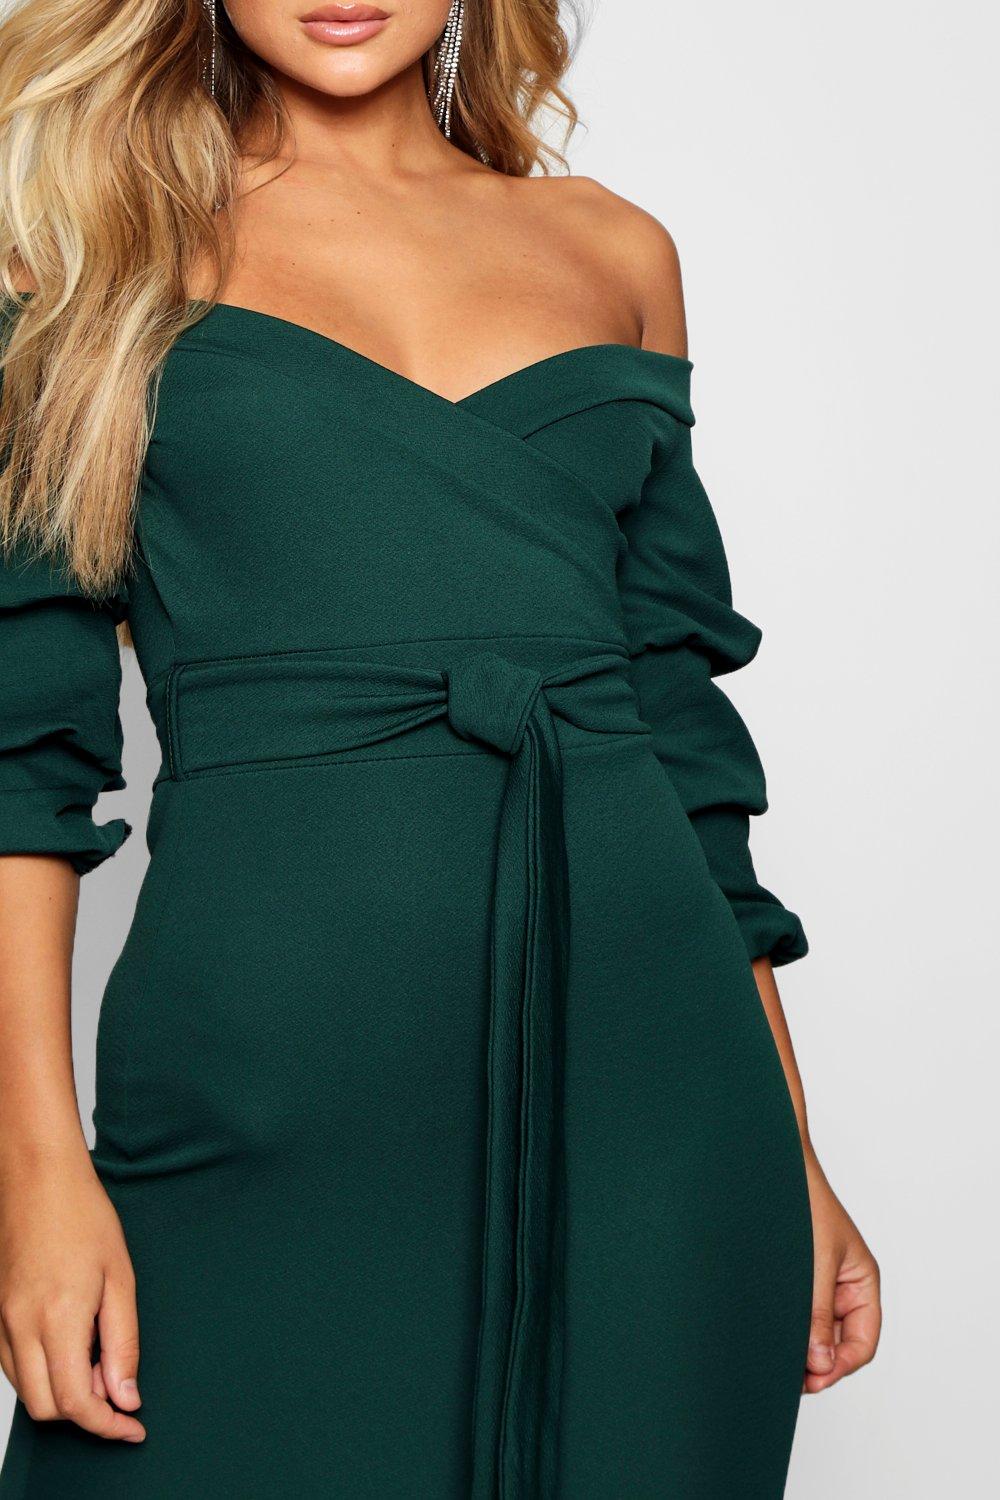 green off the shoulder midi dress